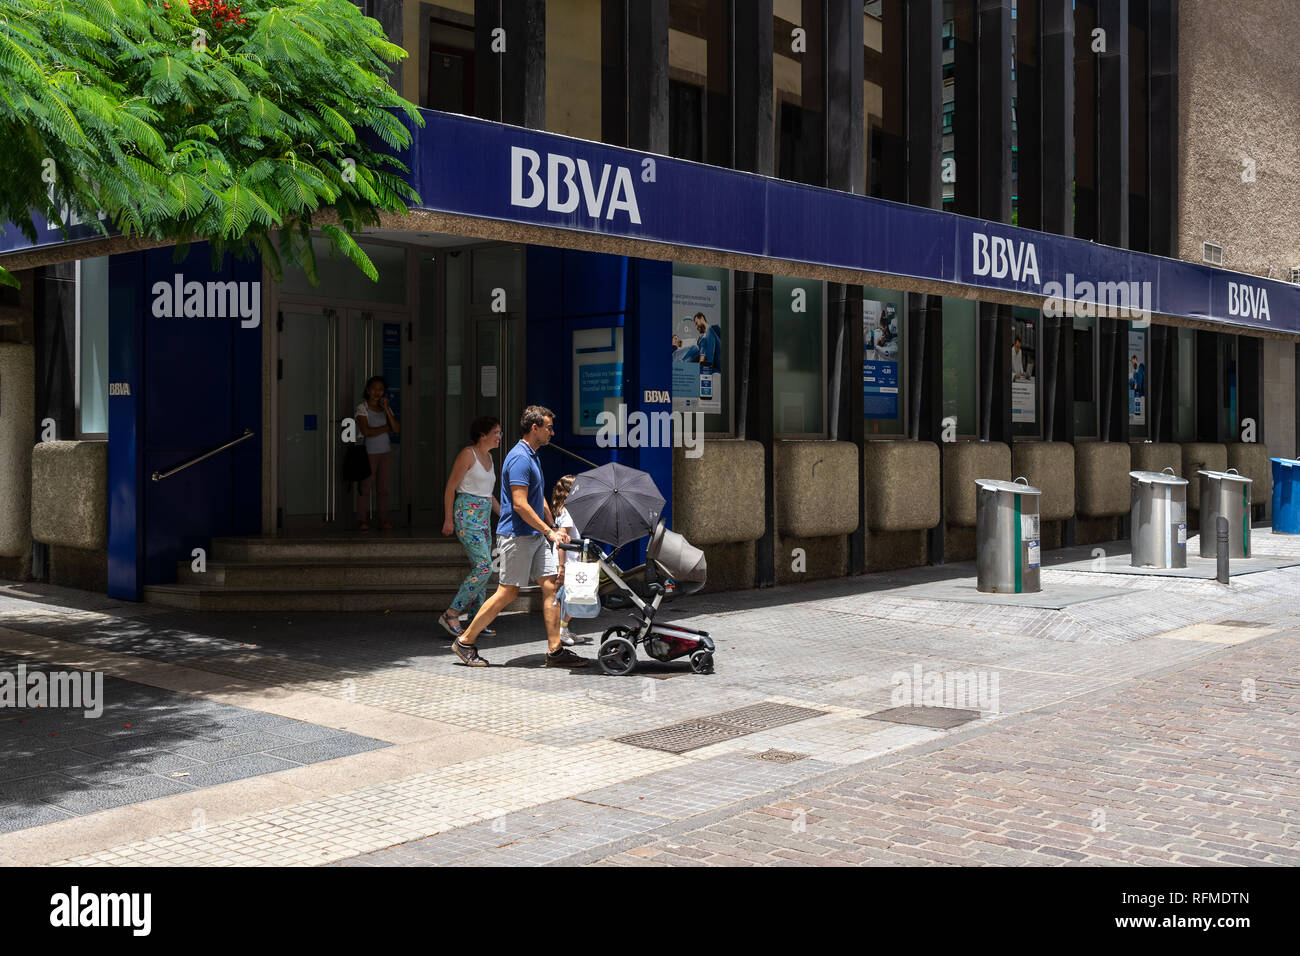 Oficina del Banco Bilbao Vizcaya Argentaria (BBVA) en una calle comercial en la parte histórica de la ciudad. Santa Cruz es la ciudad capital de la isla de Tenerife. Foto de stock